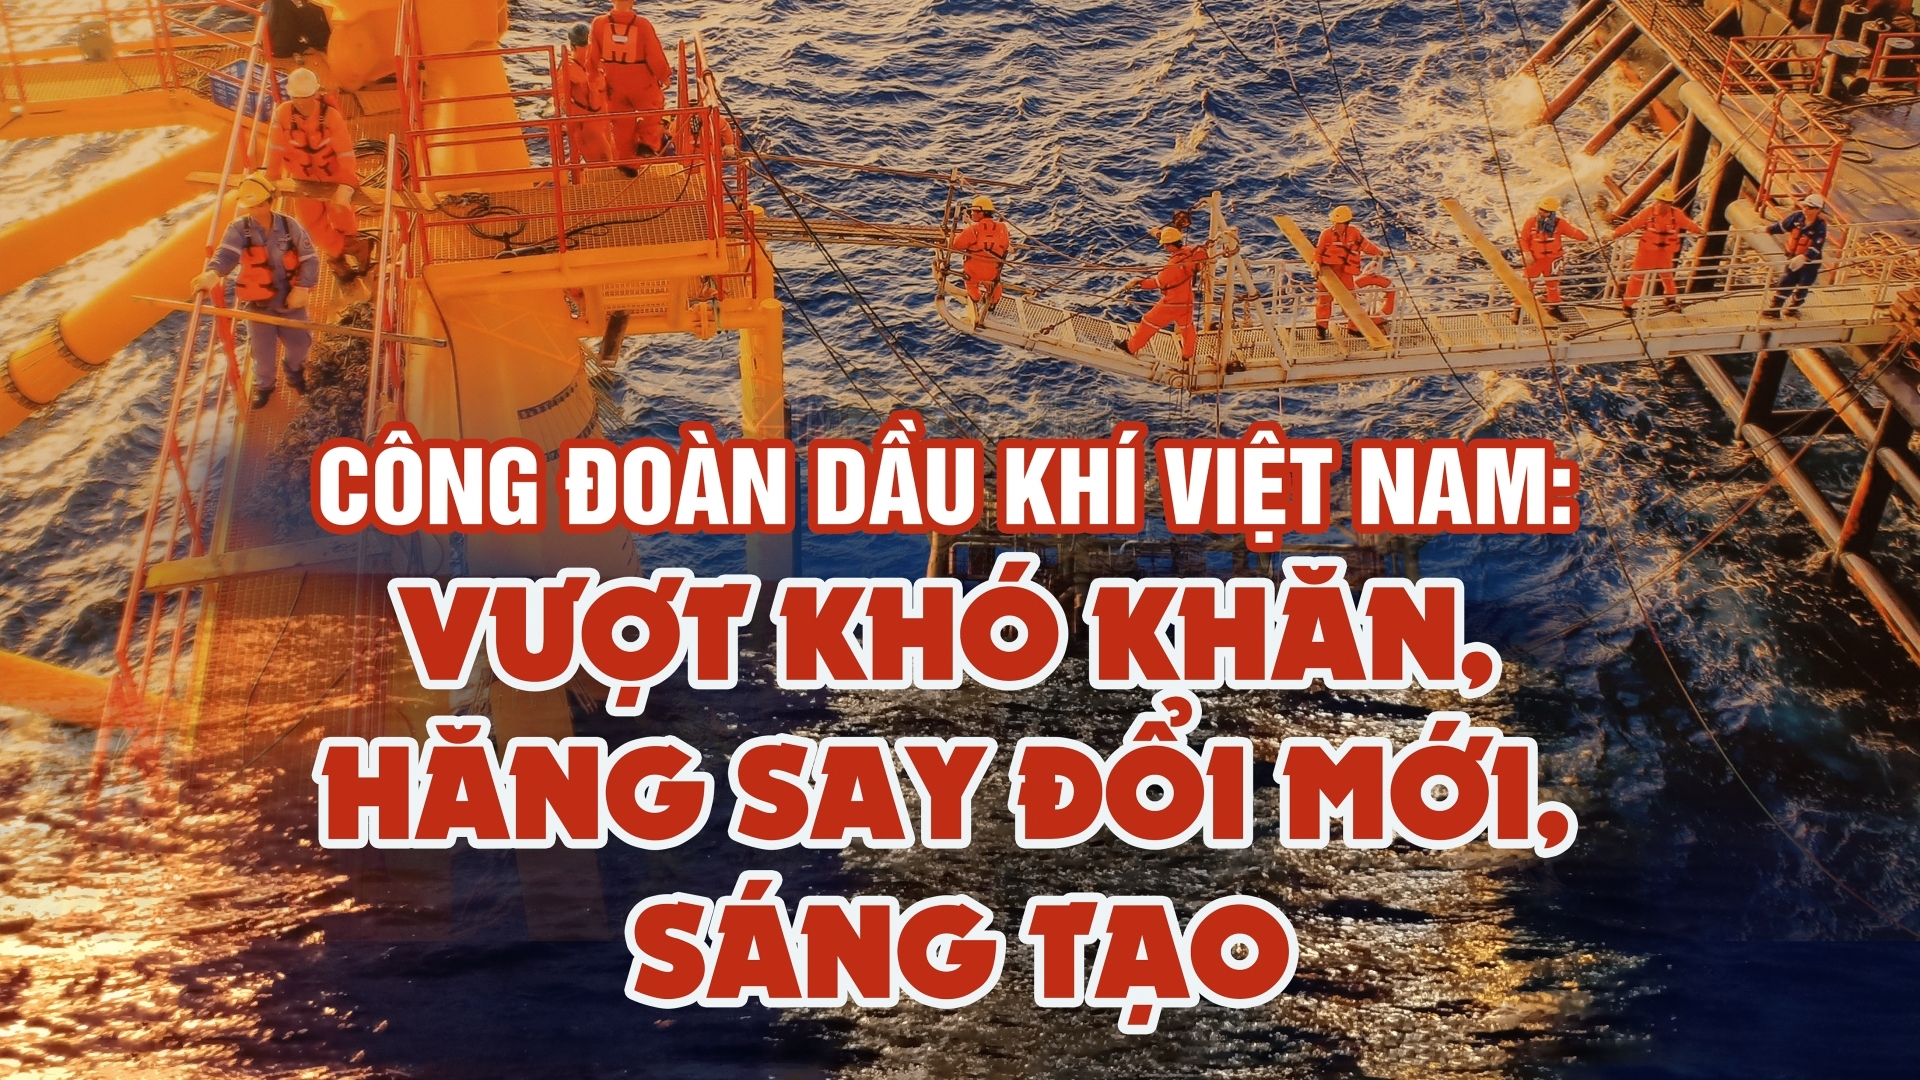 Công đoàn Dầu khí Việt Nam: Vượt khó khăn, hăng say đổi mới, sáng tạo